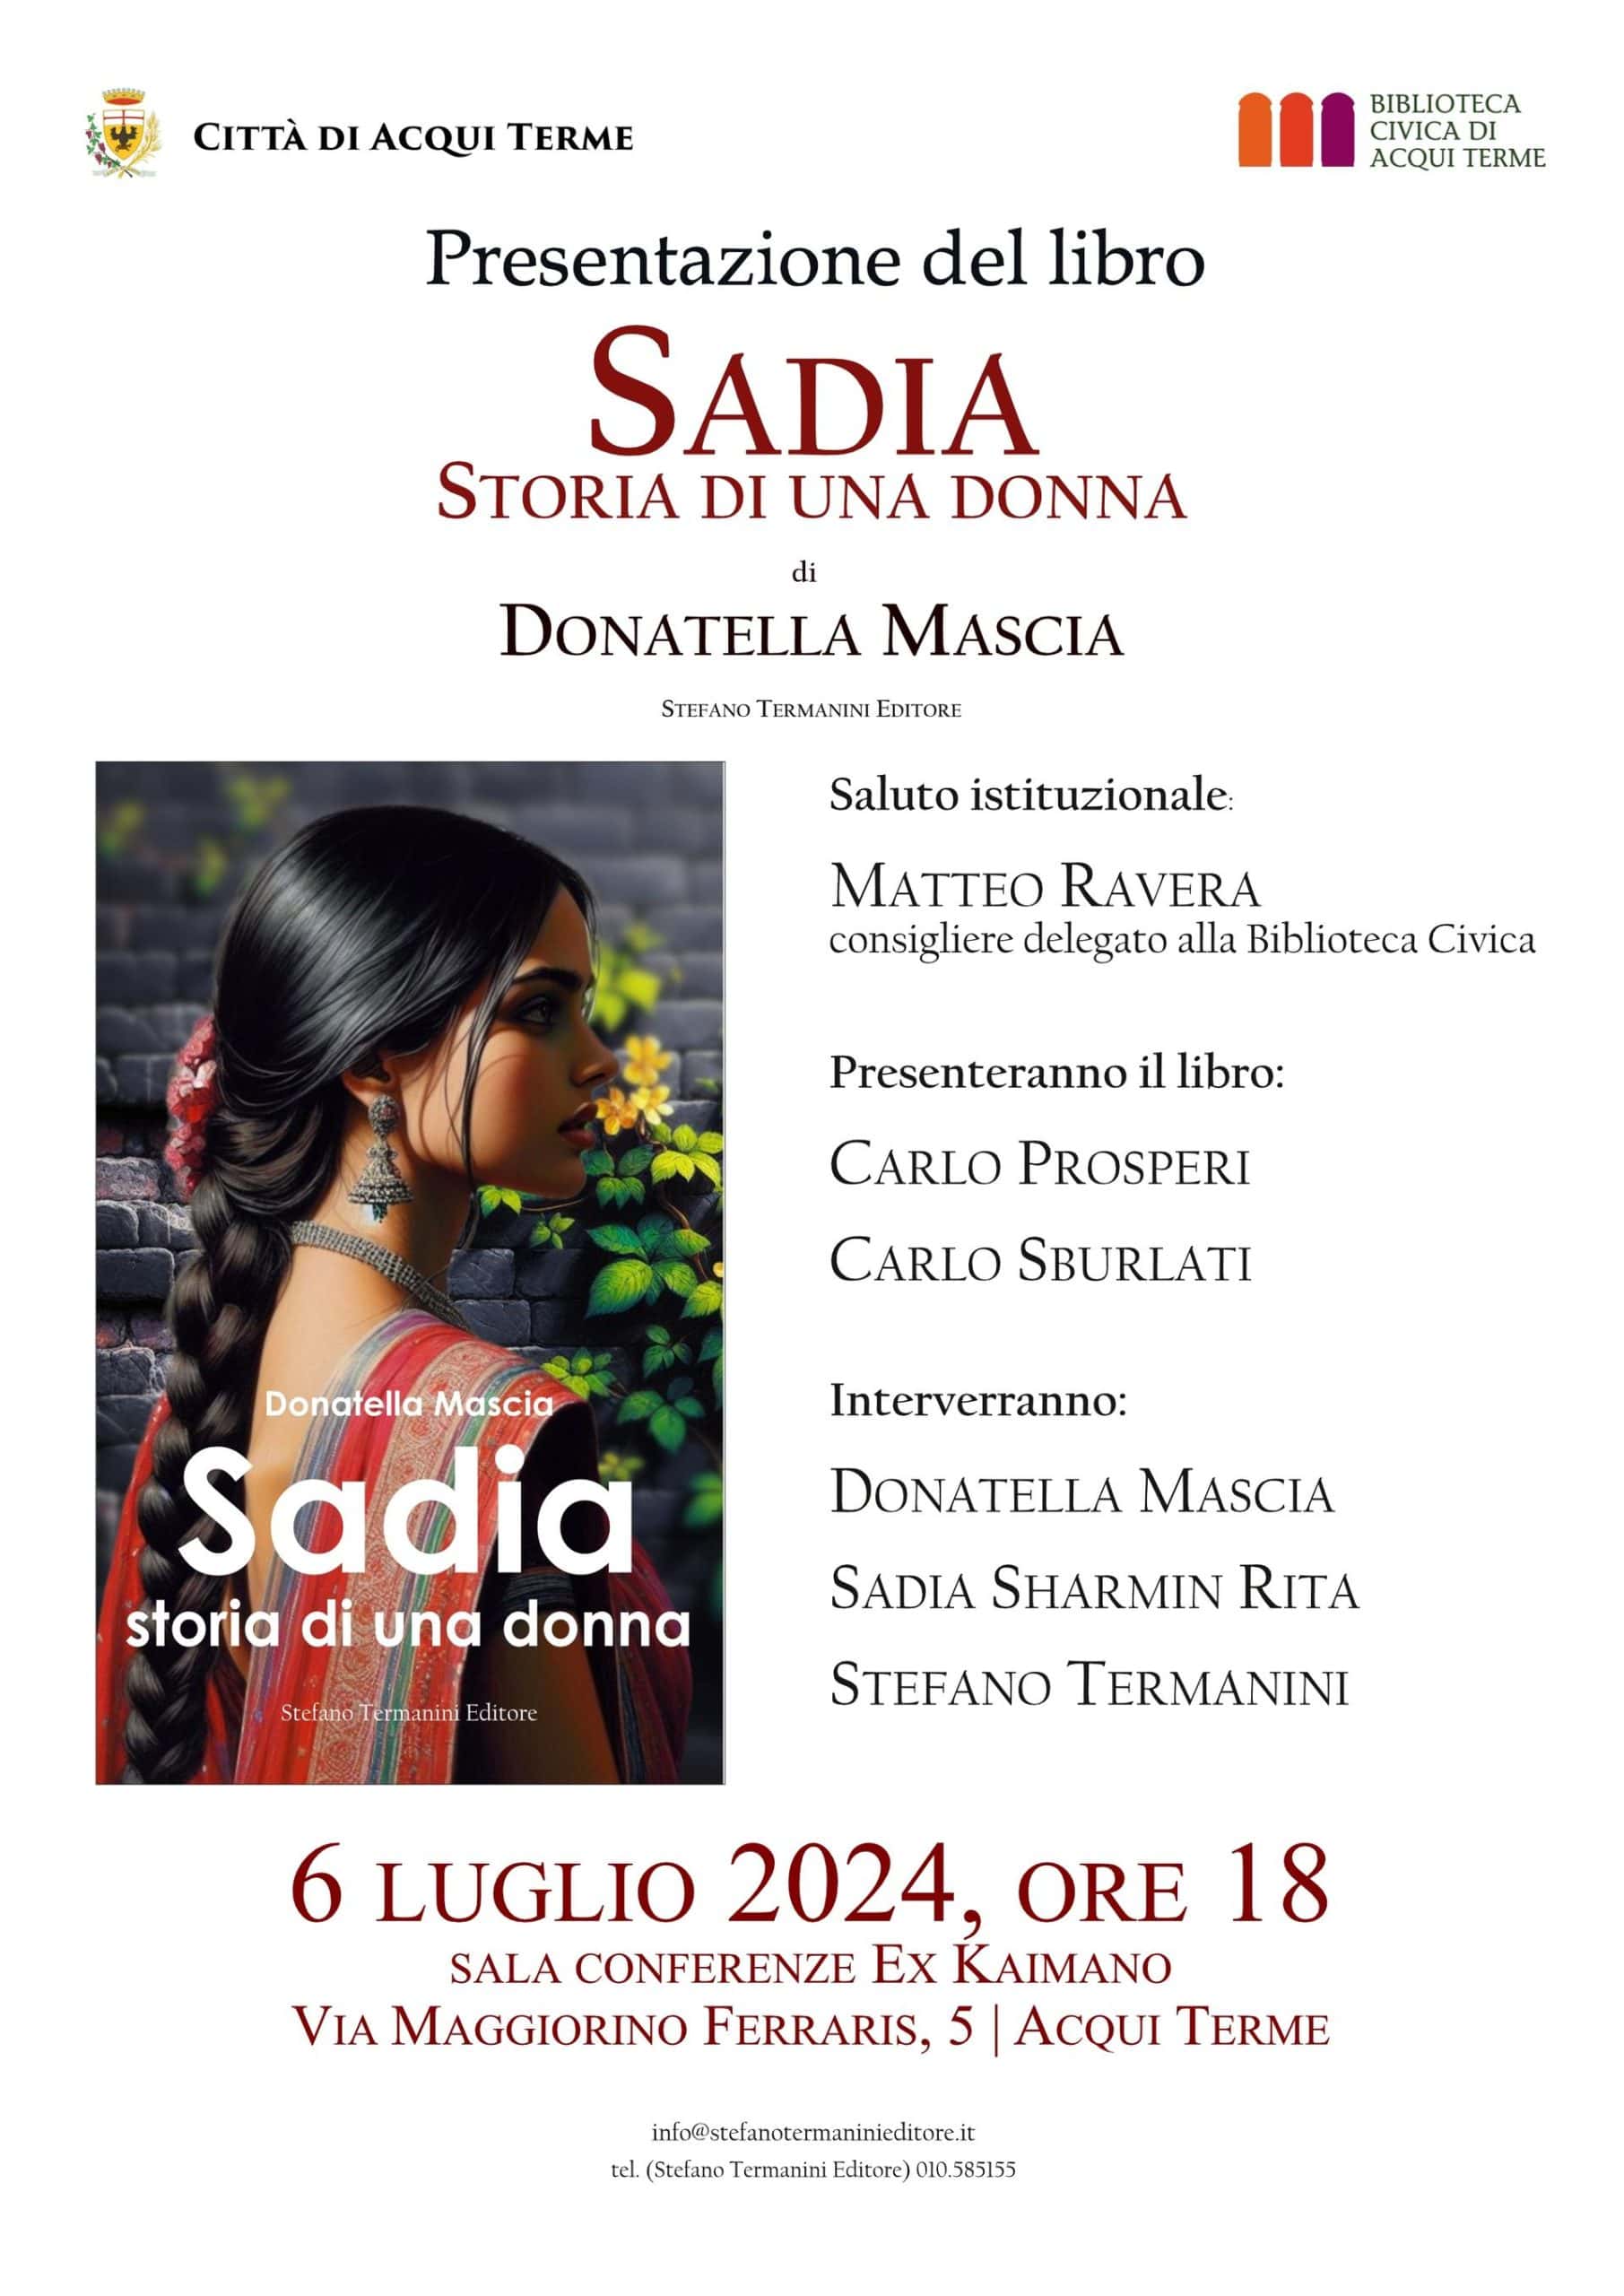  Presentazione del libro “Sadia, storia di una donna”